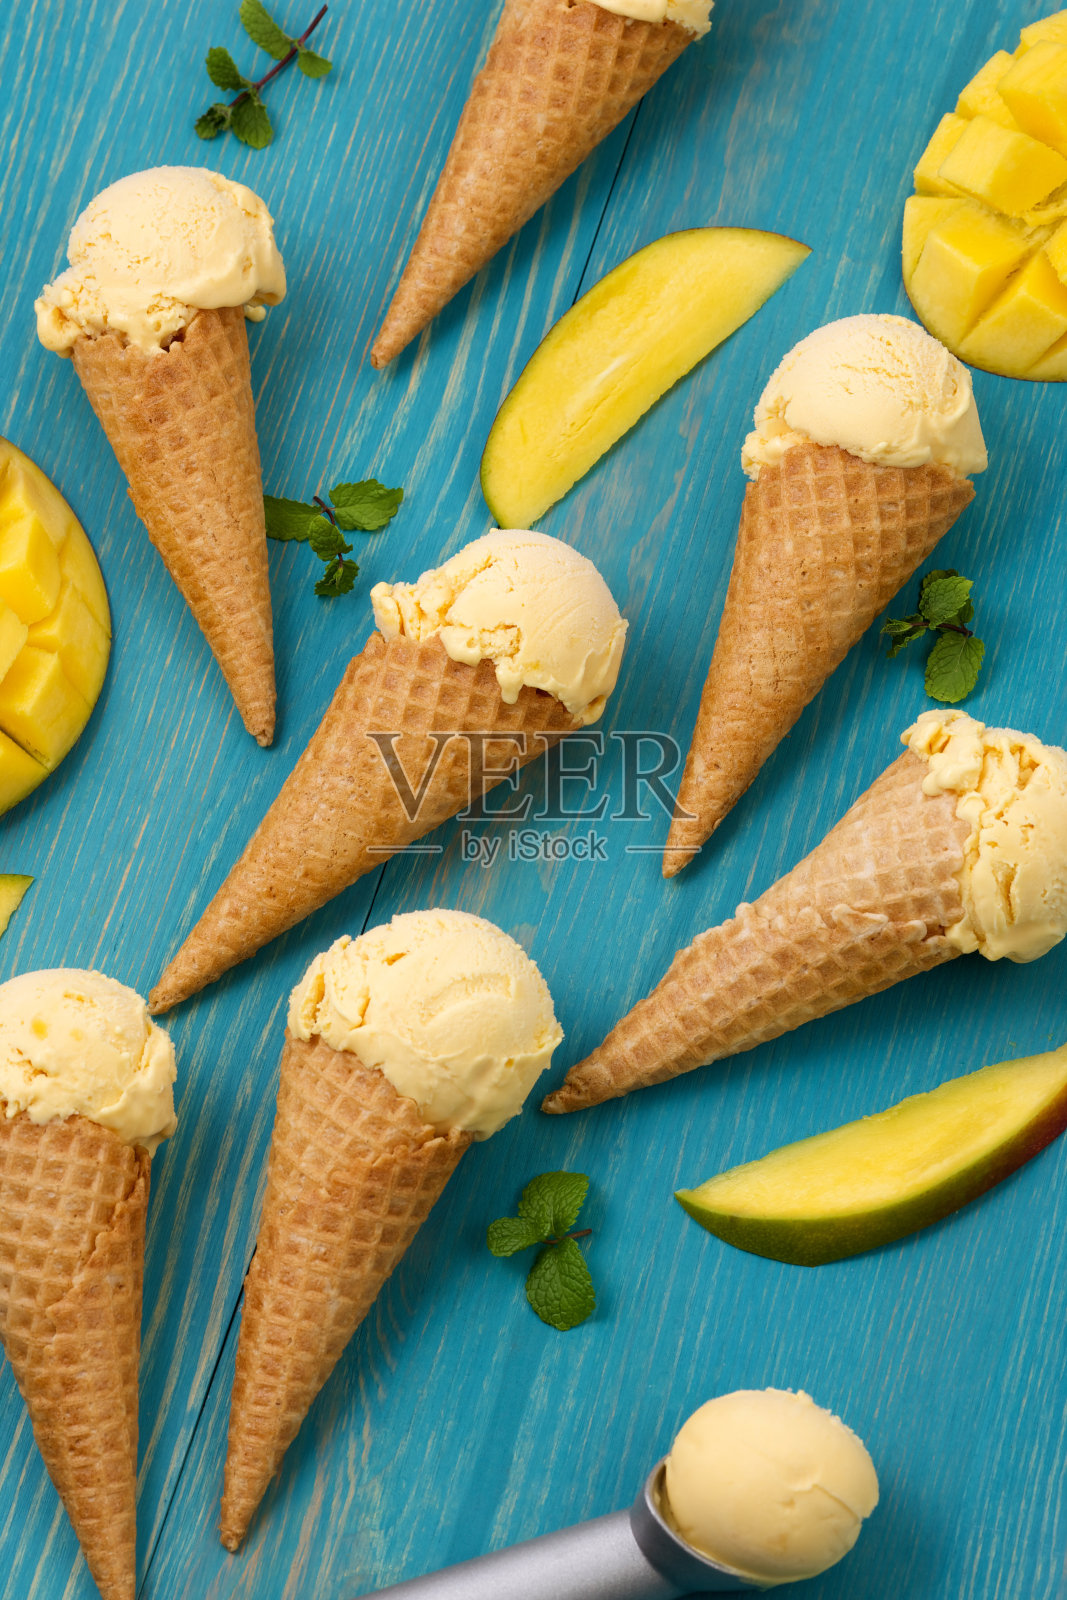 芒果冰淇淋甜筒的质地照片摄影图片